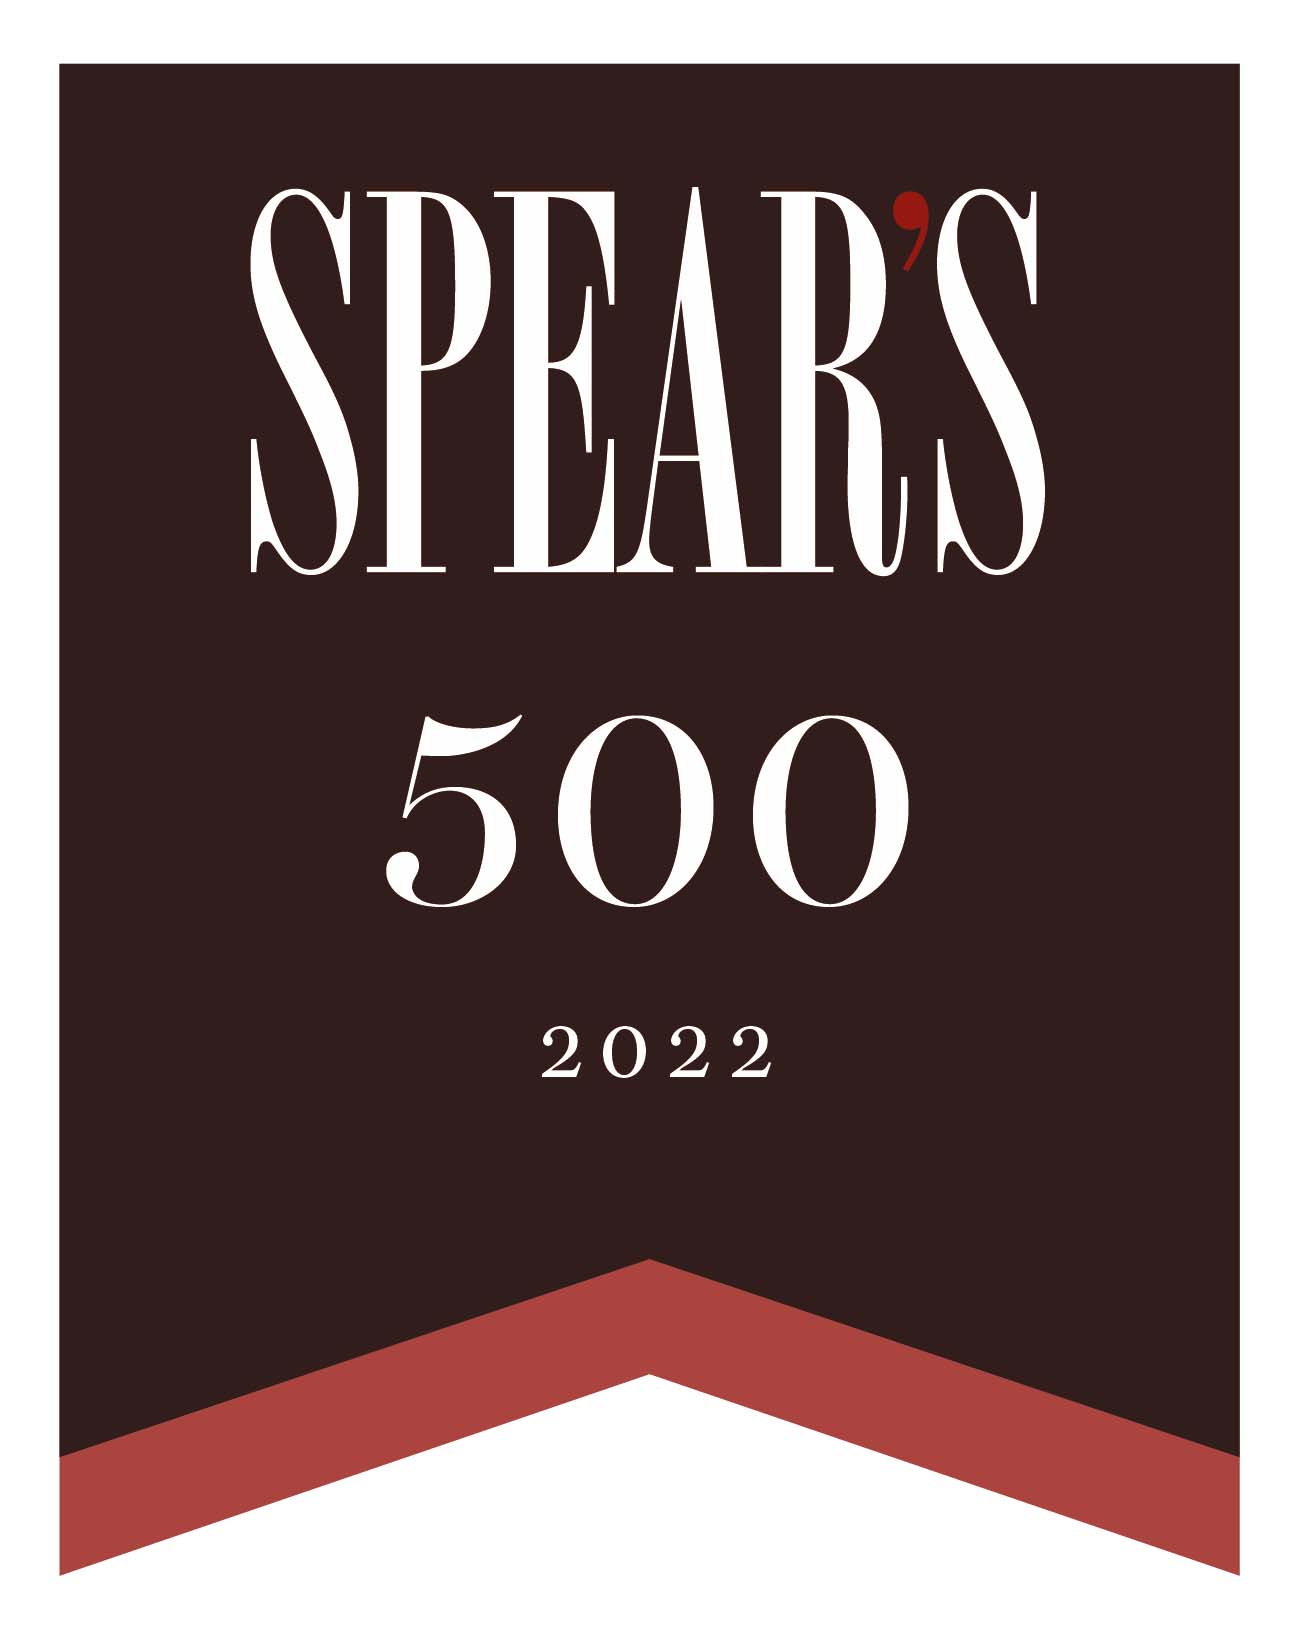 Spears 500 2022 logo